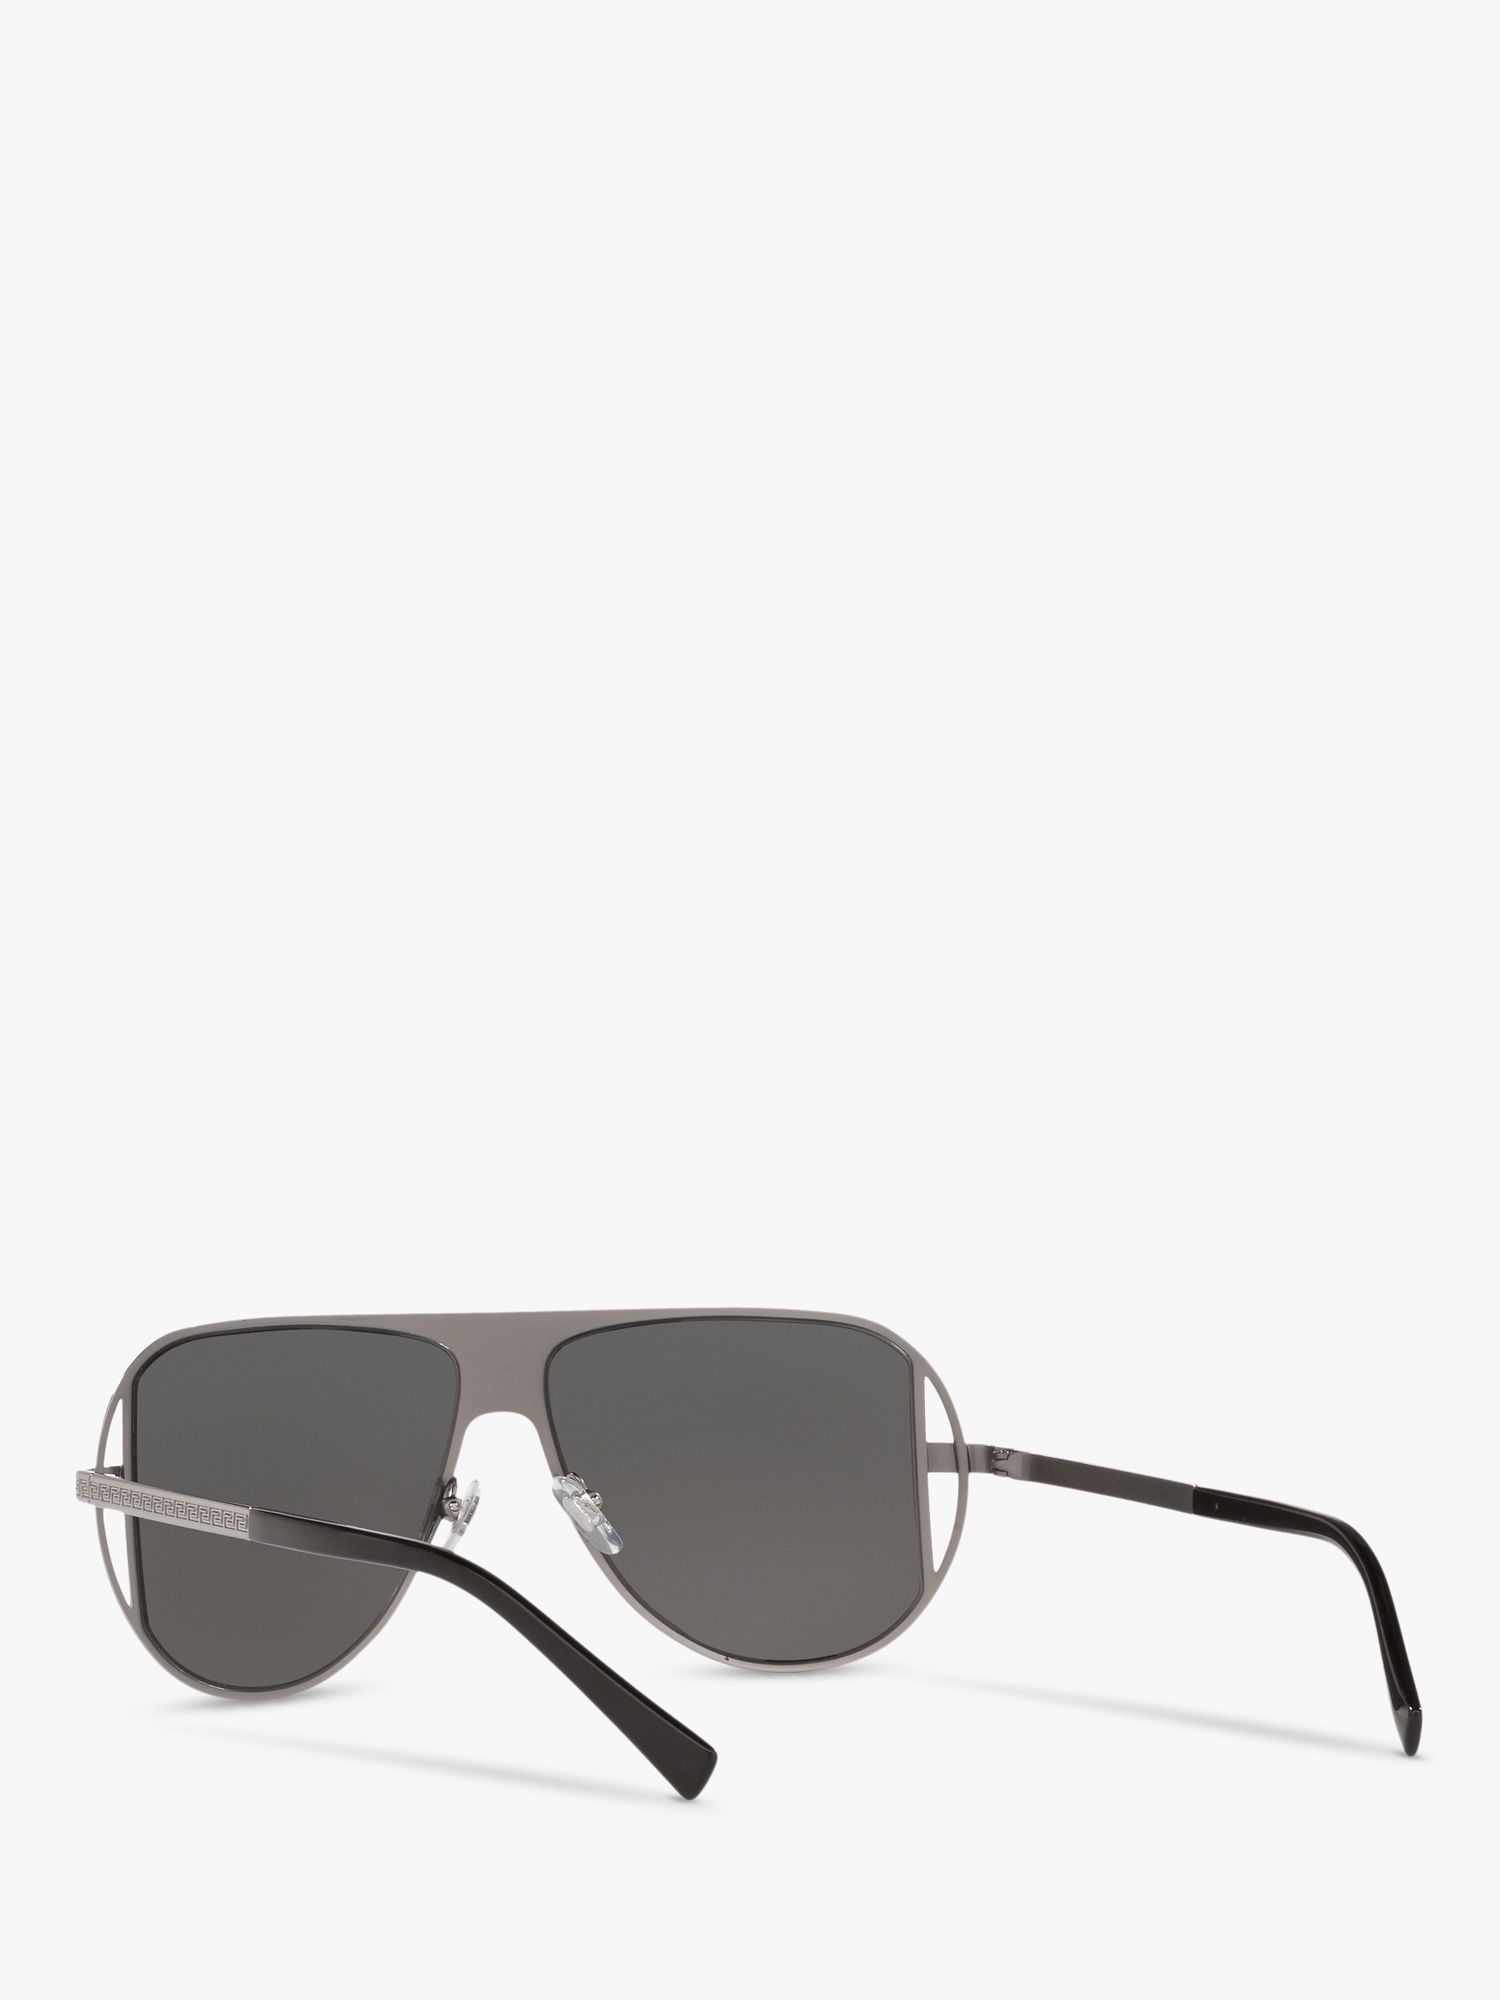 Buy Versace VE2212 Men's Aviator Sunglasses Online at johnlewis.com